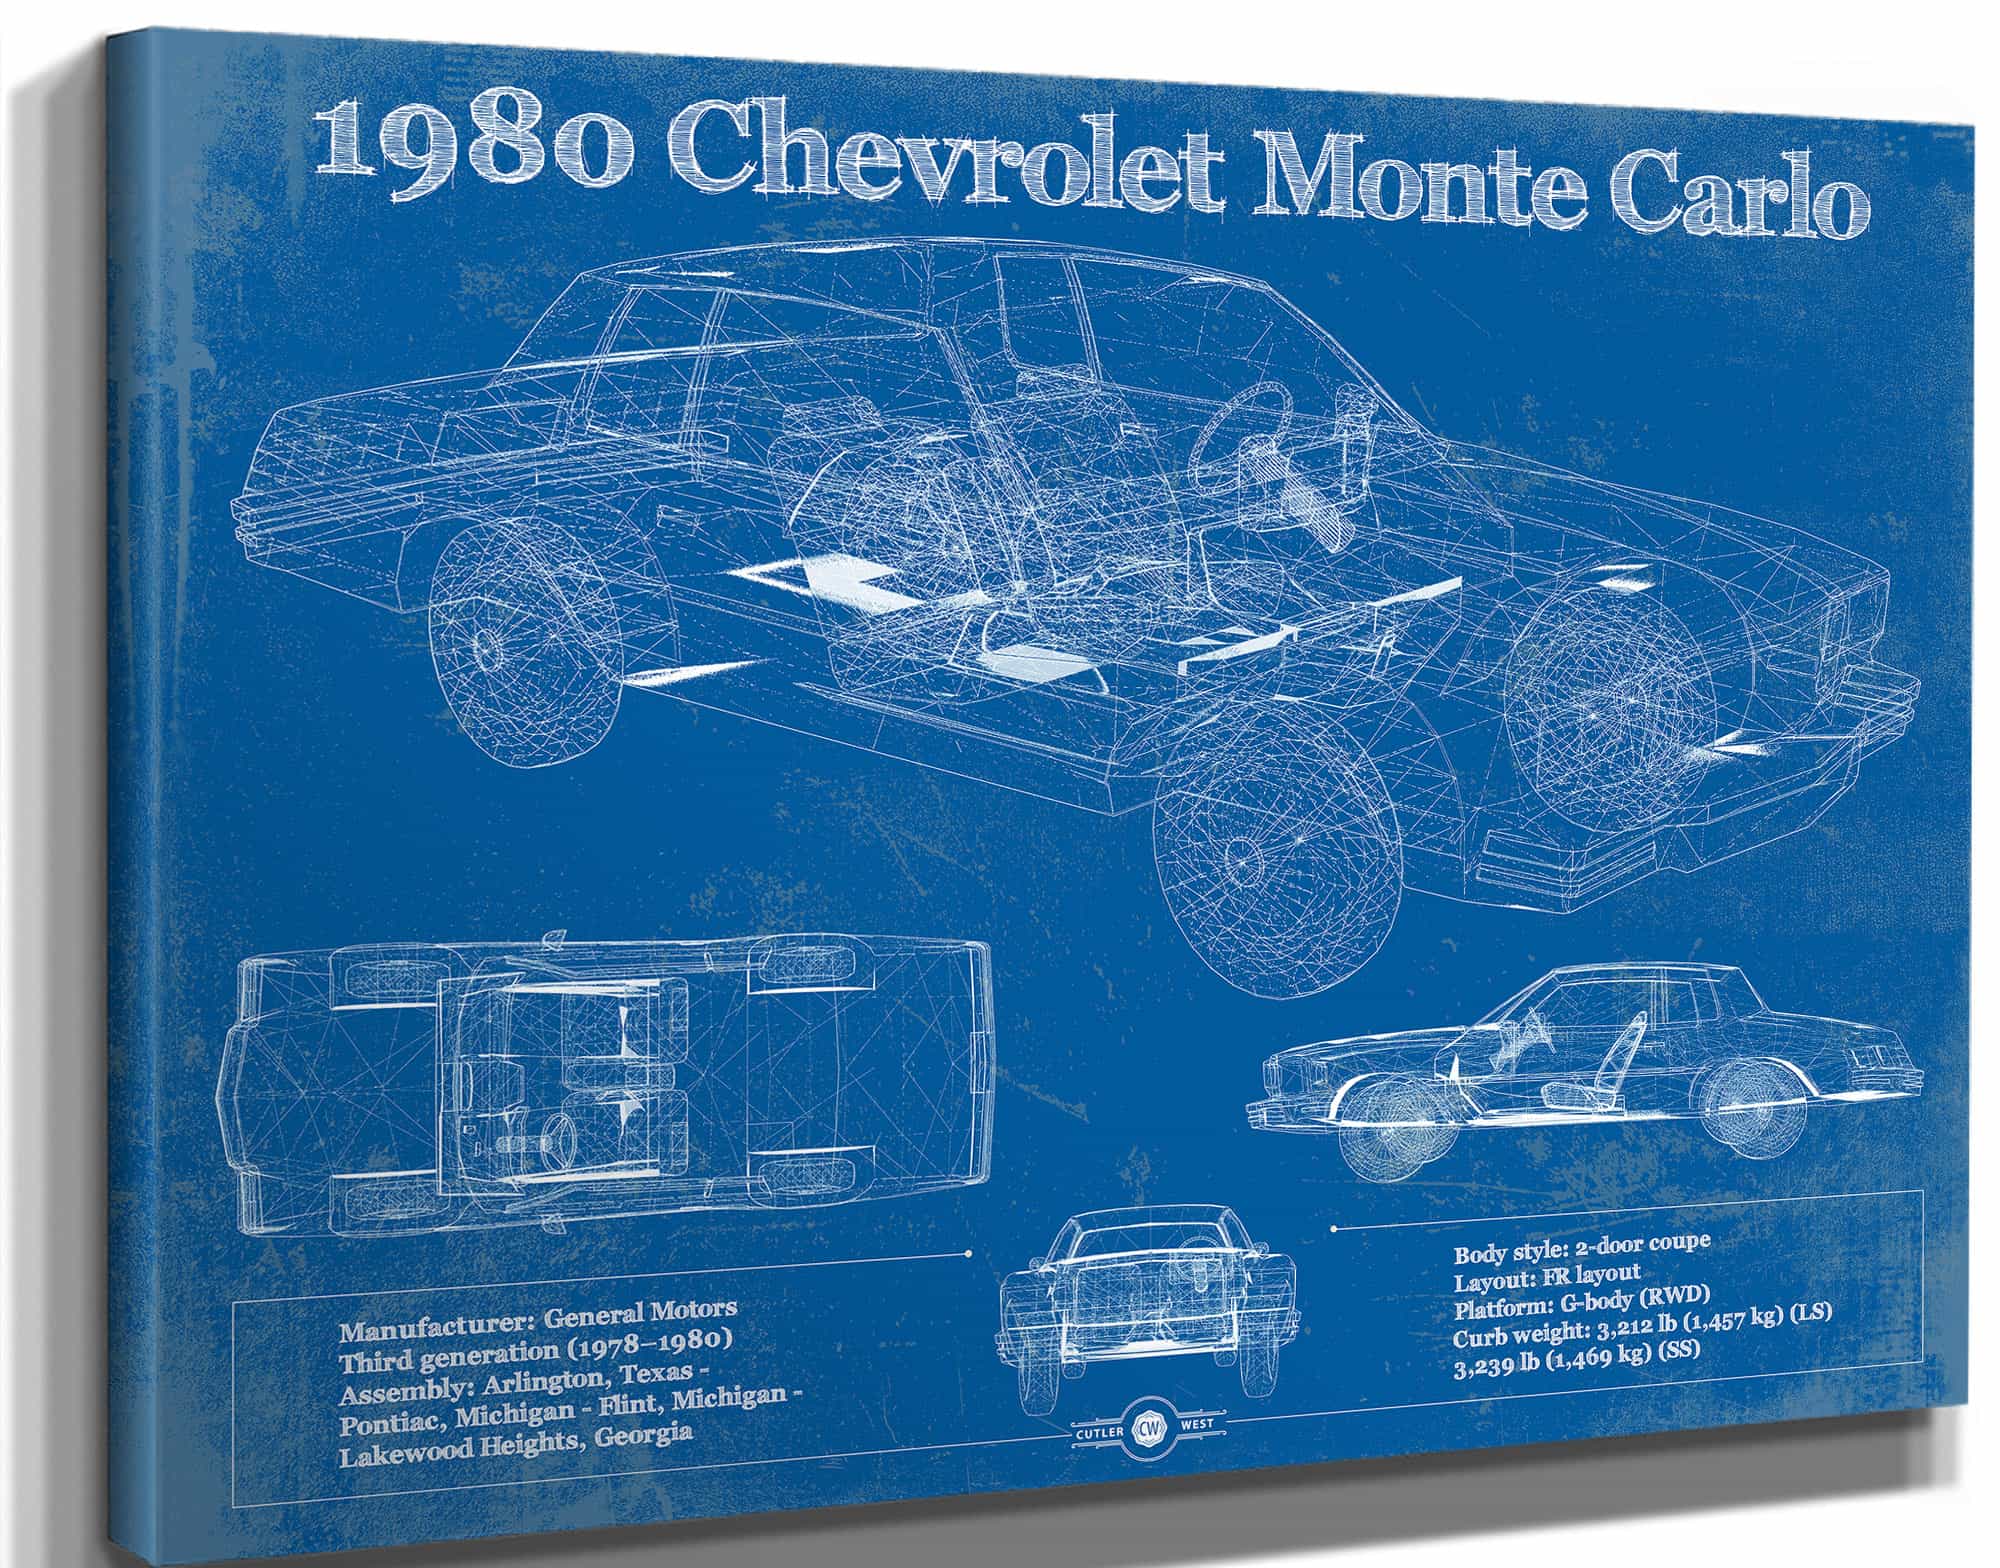 1980 Chevrolet Monte Carlo Blueprint Vintage Auto Patent Print